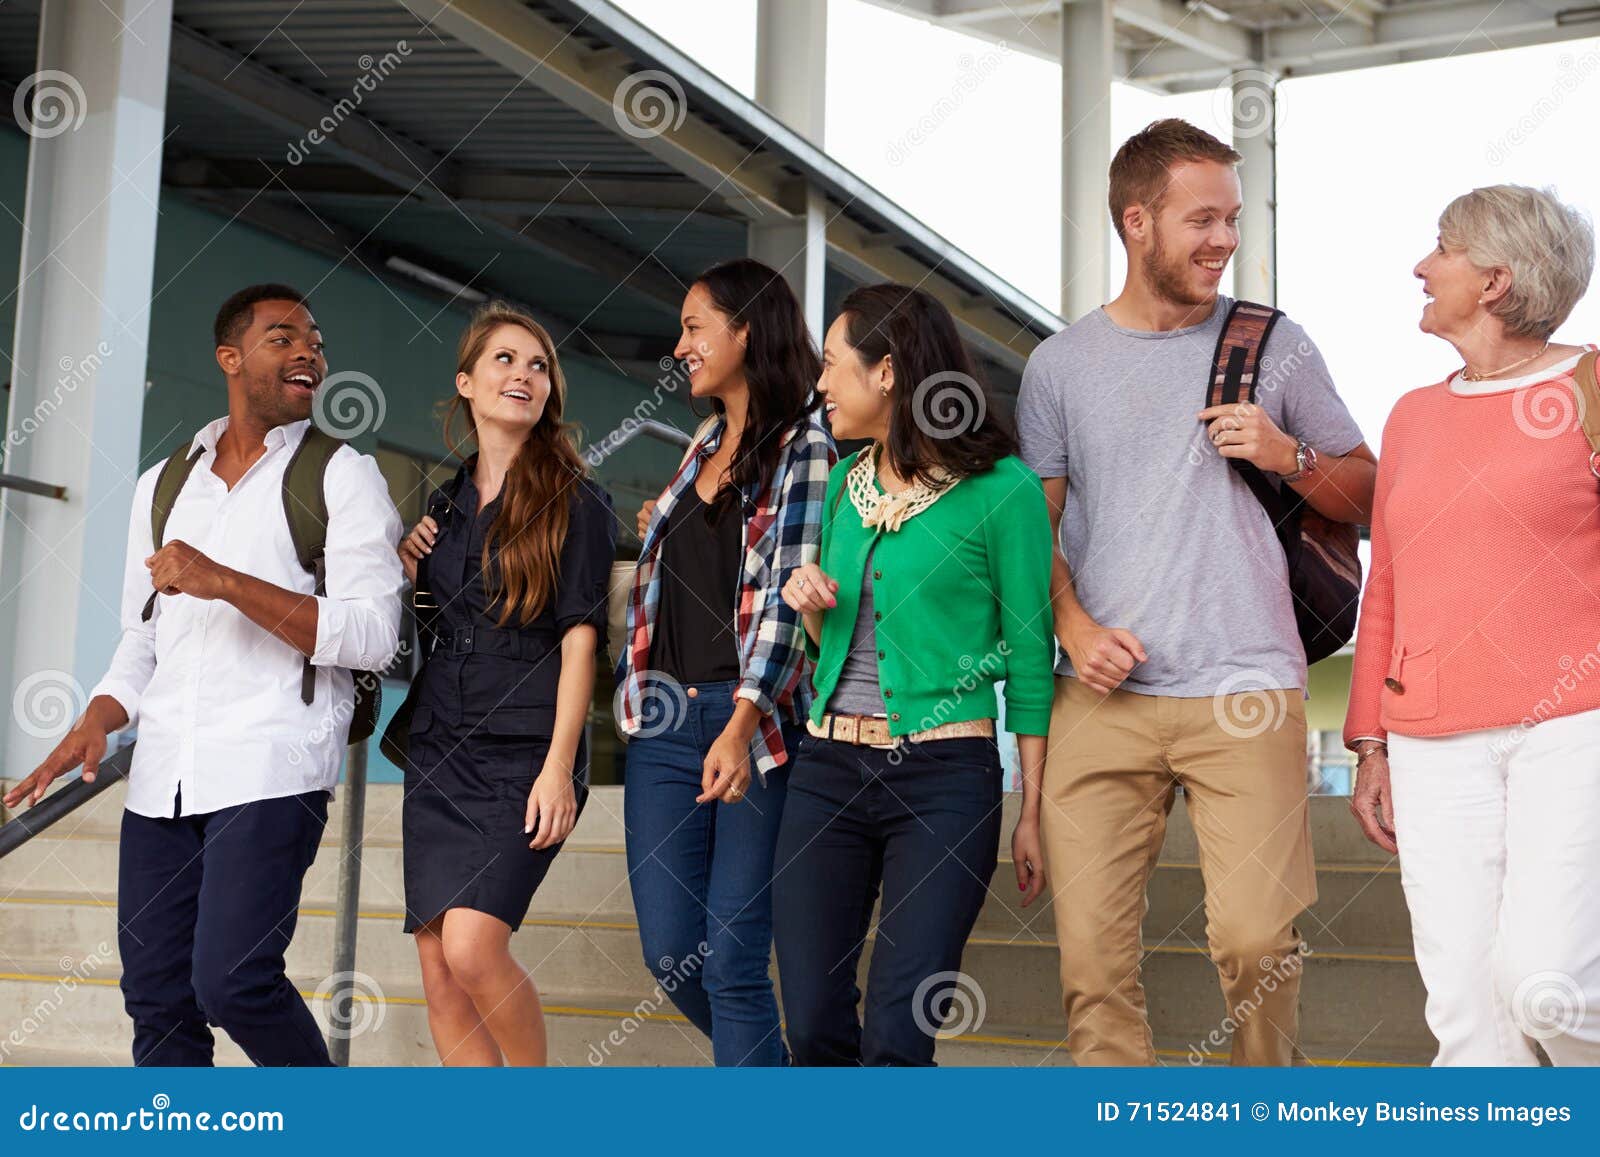 a group of happy teachers walking in a school corridor